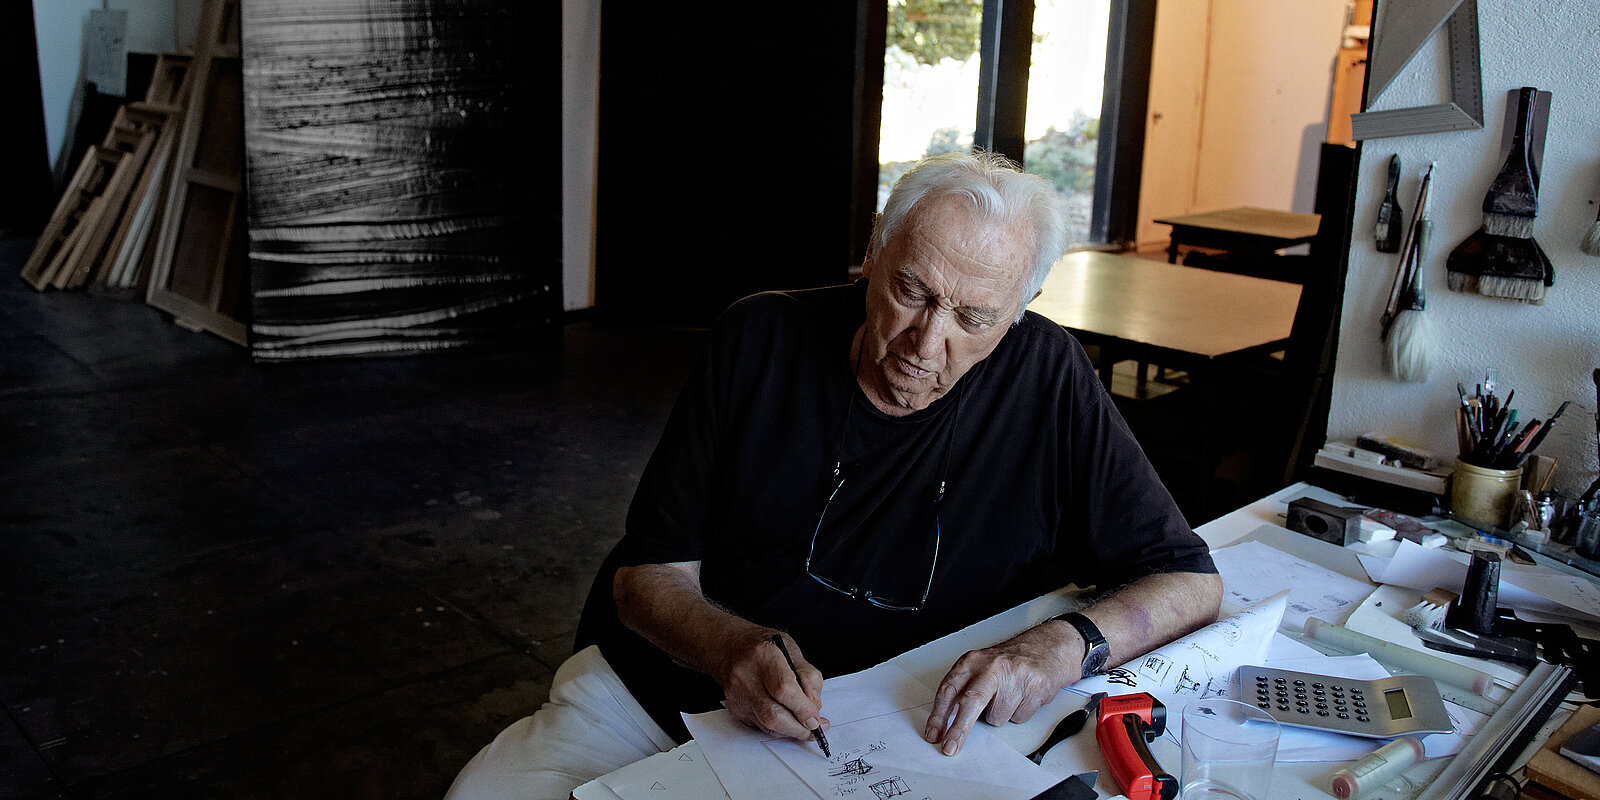 Pierre Soulages dans son atelier, Paris 2015. Photo: Vincent Cunillère